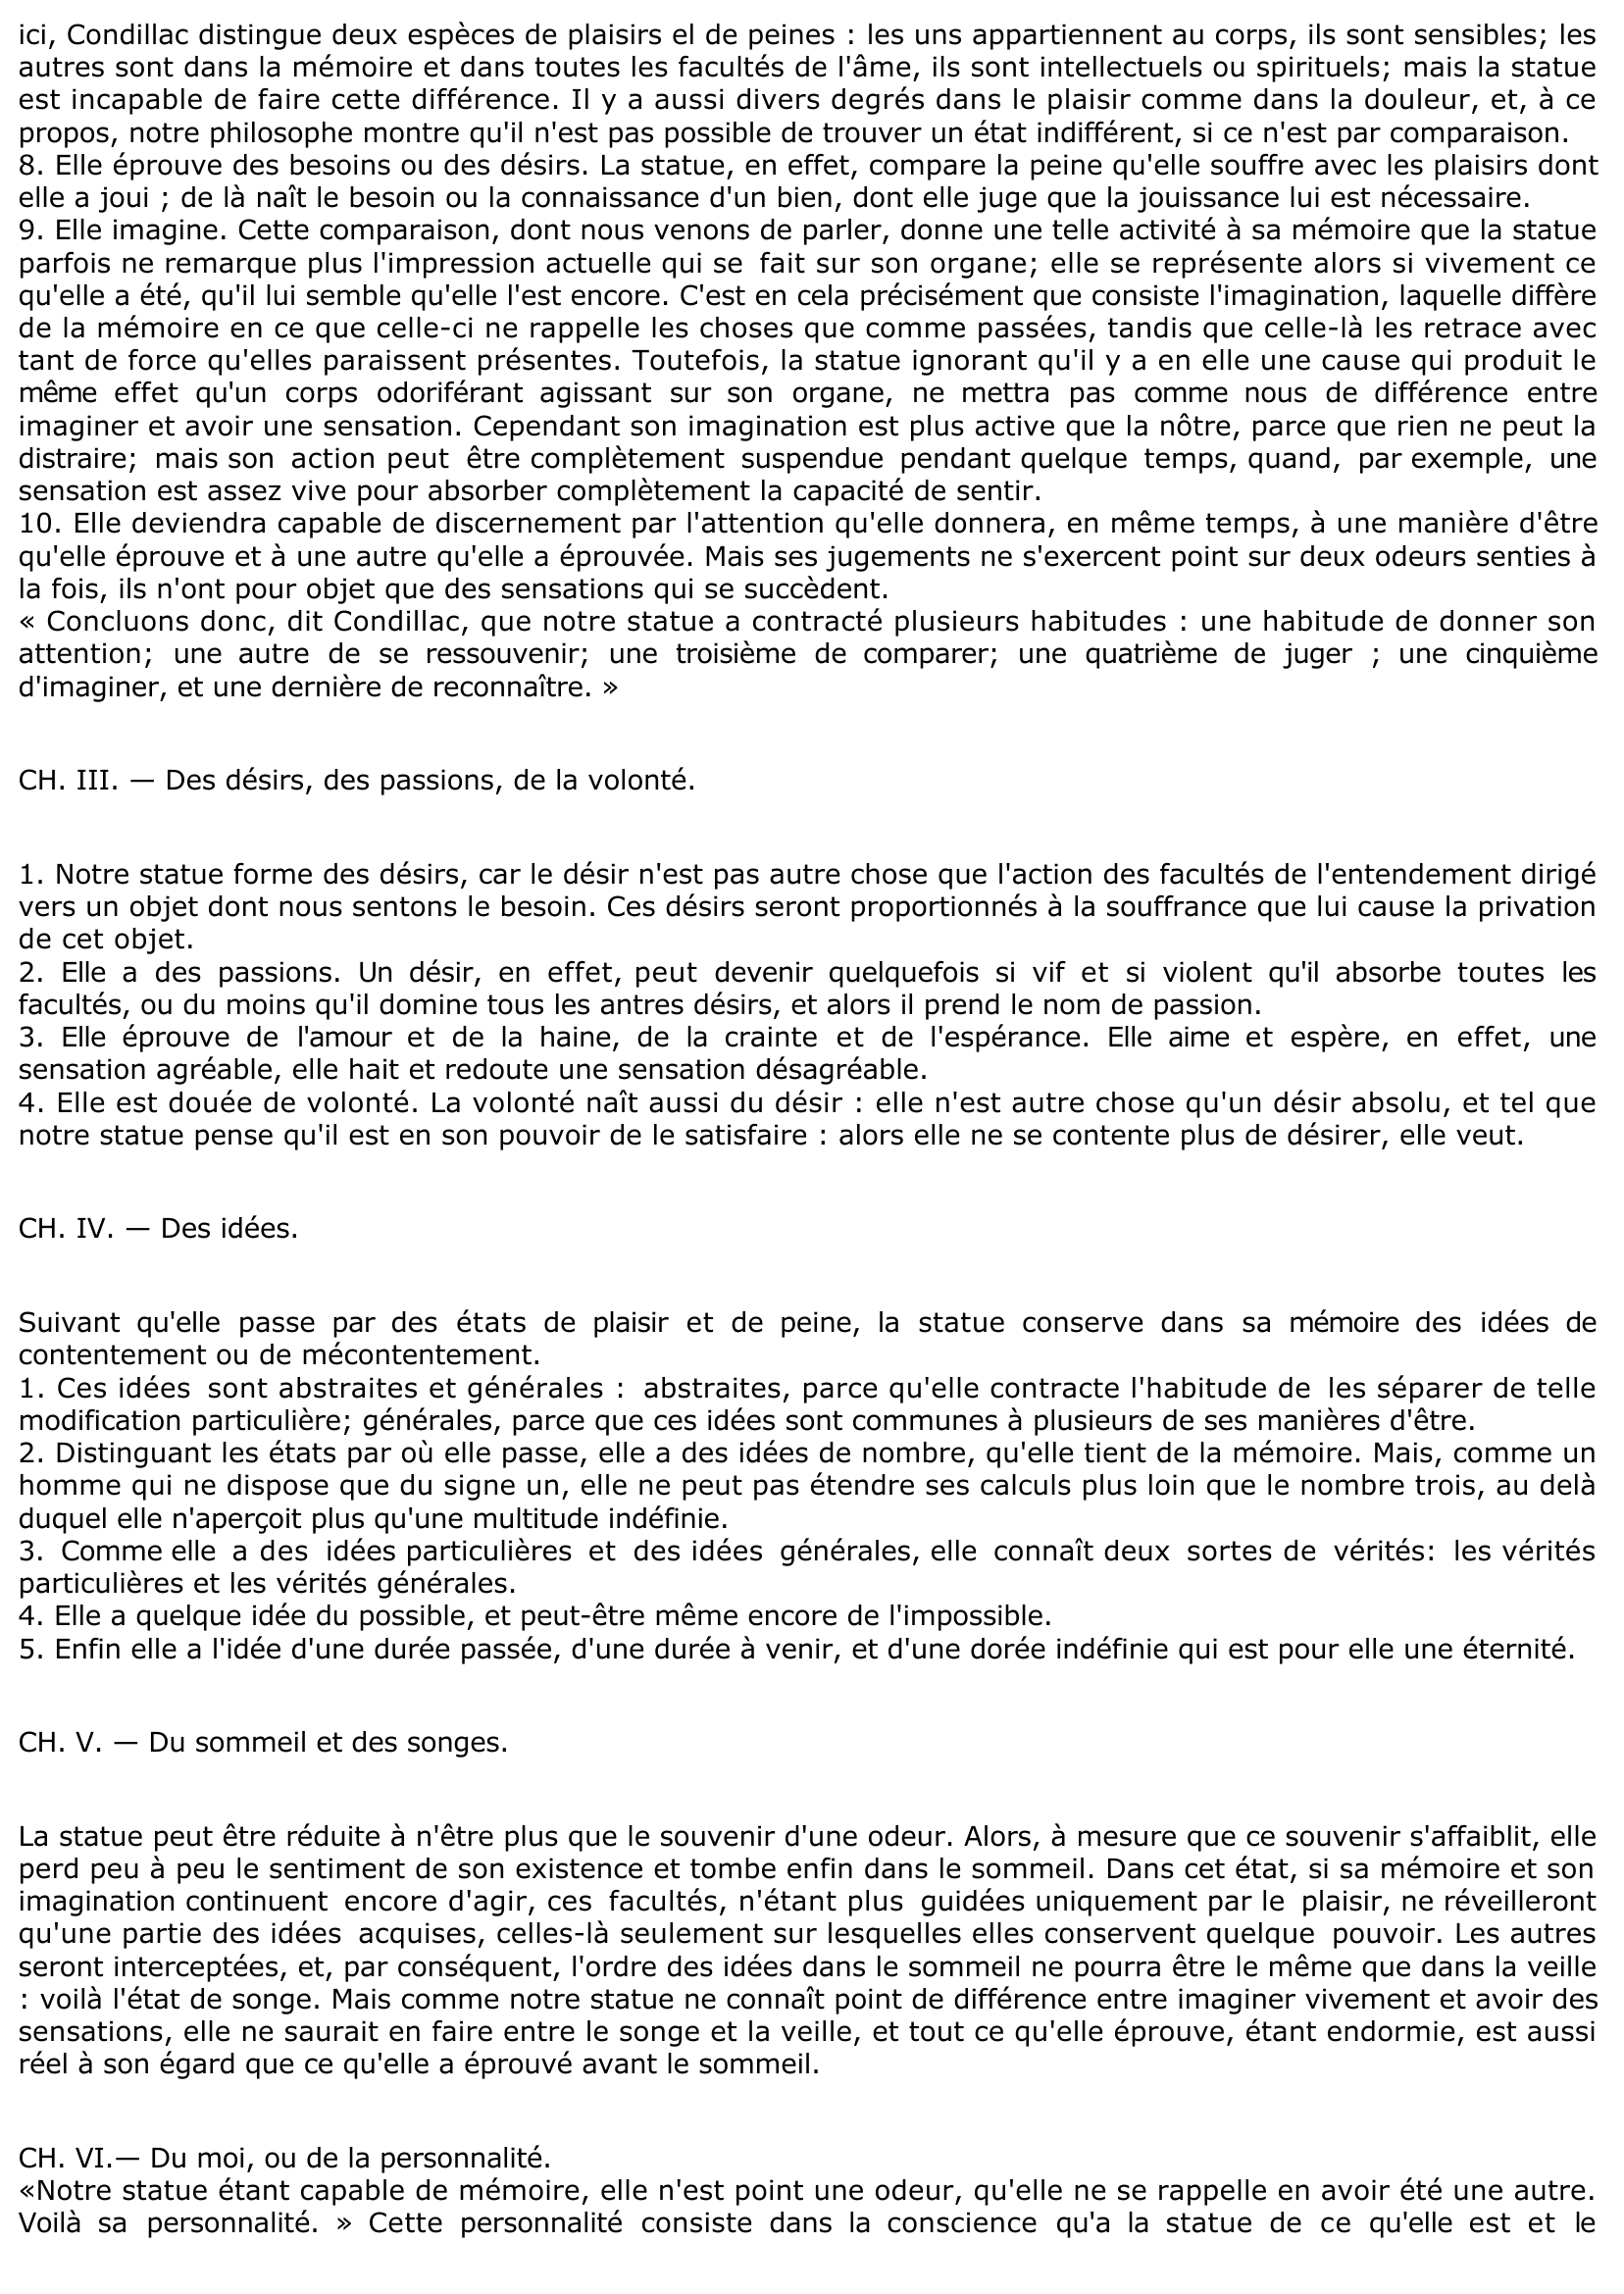 Prévisualisation du document TRAITÉ DES SENSATIONS DE CONDILLAC (fiche de lecture)